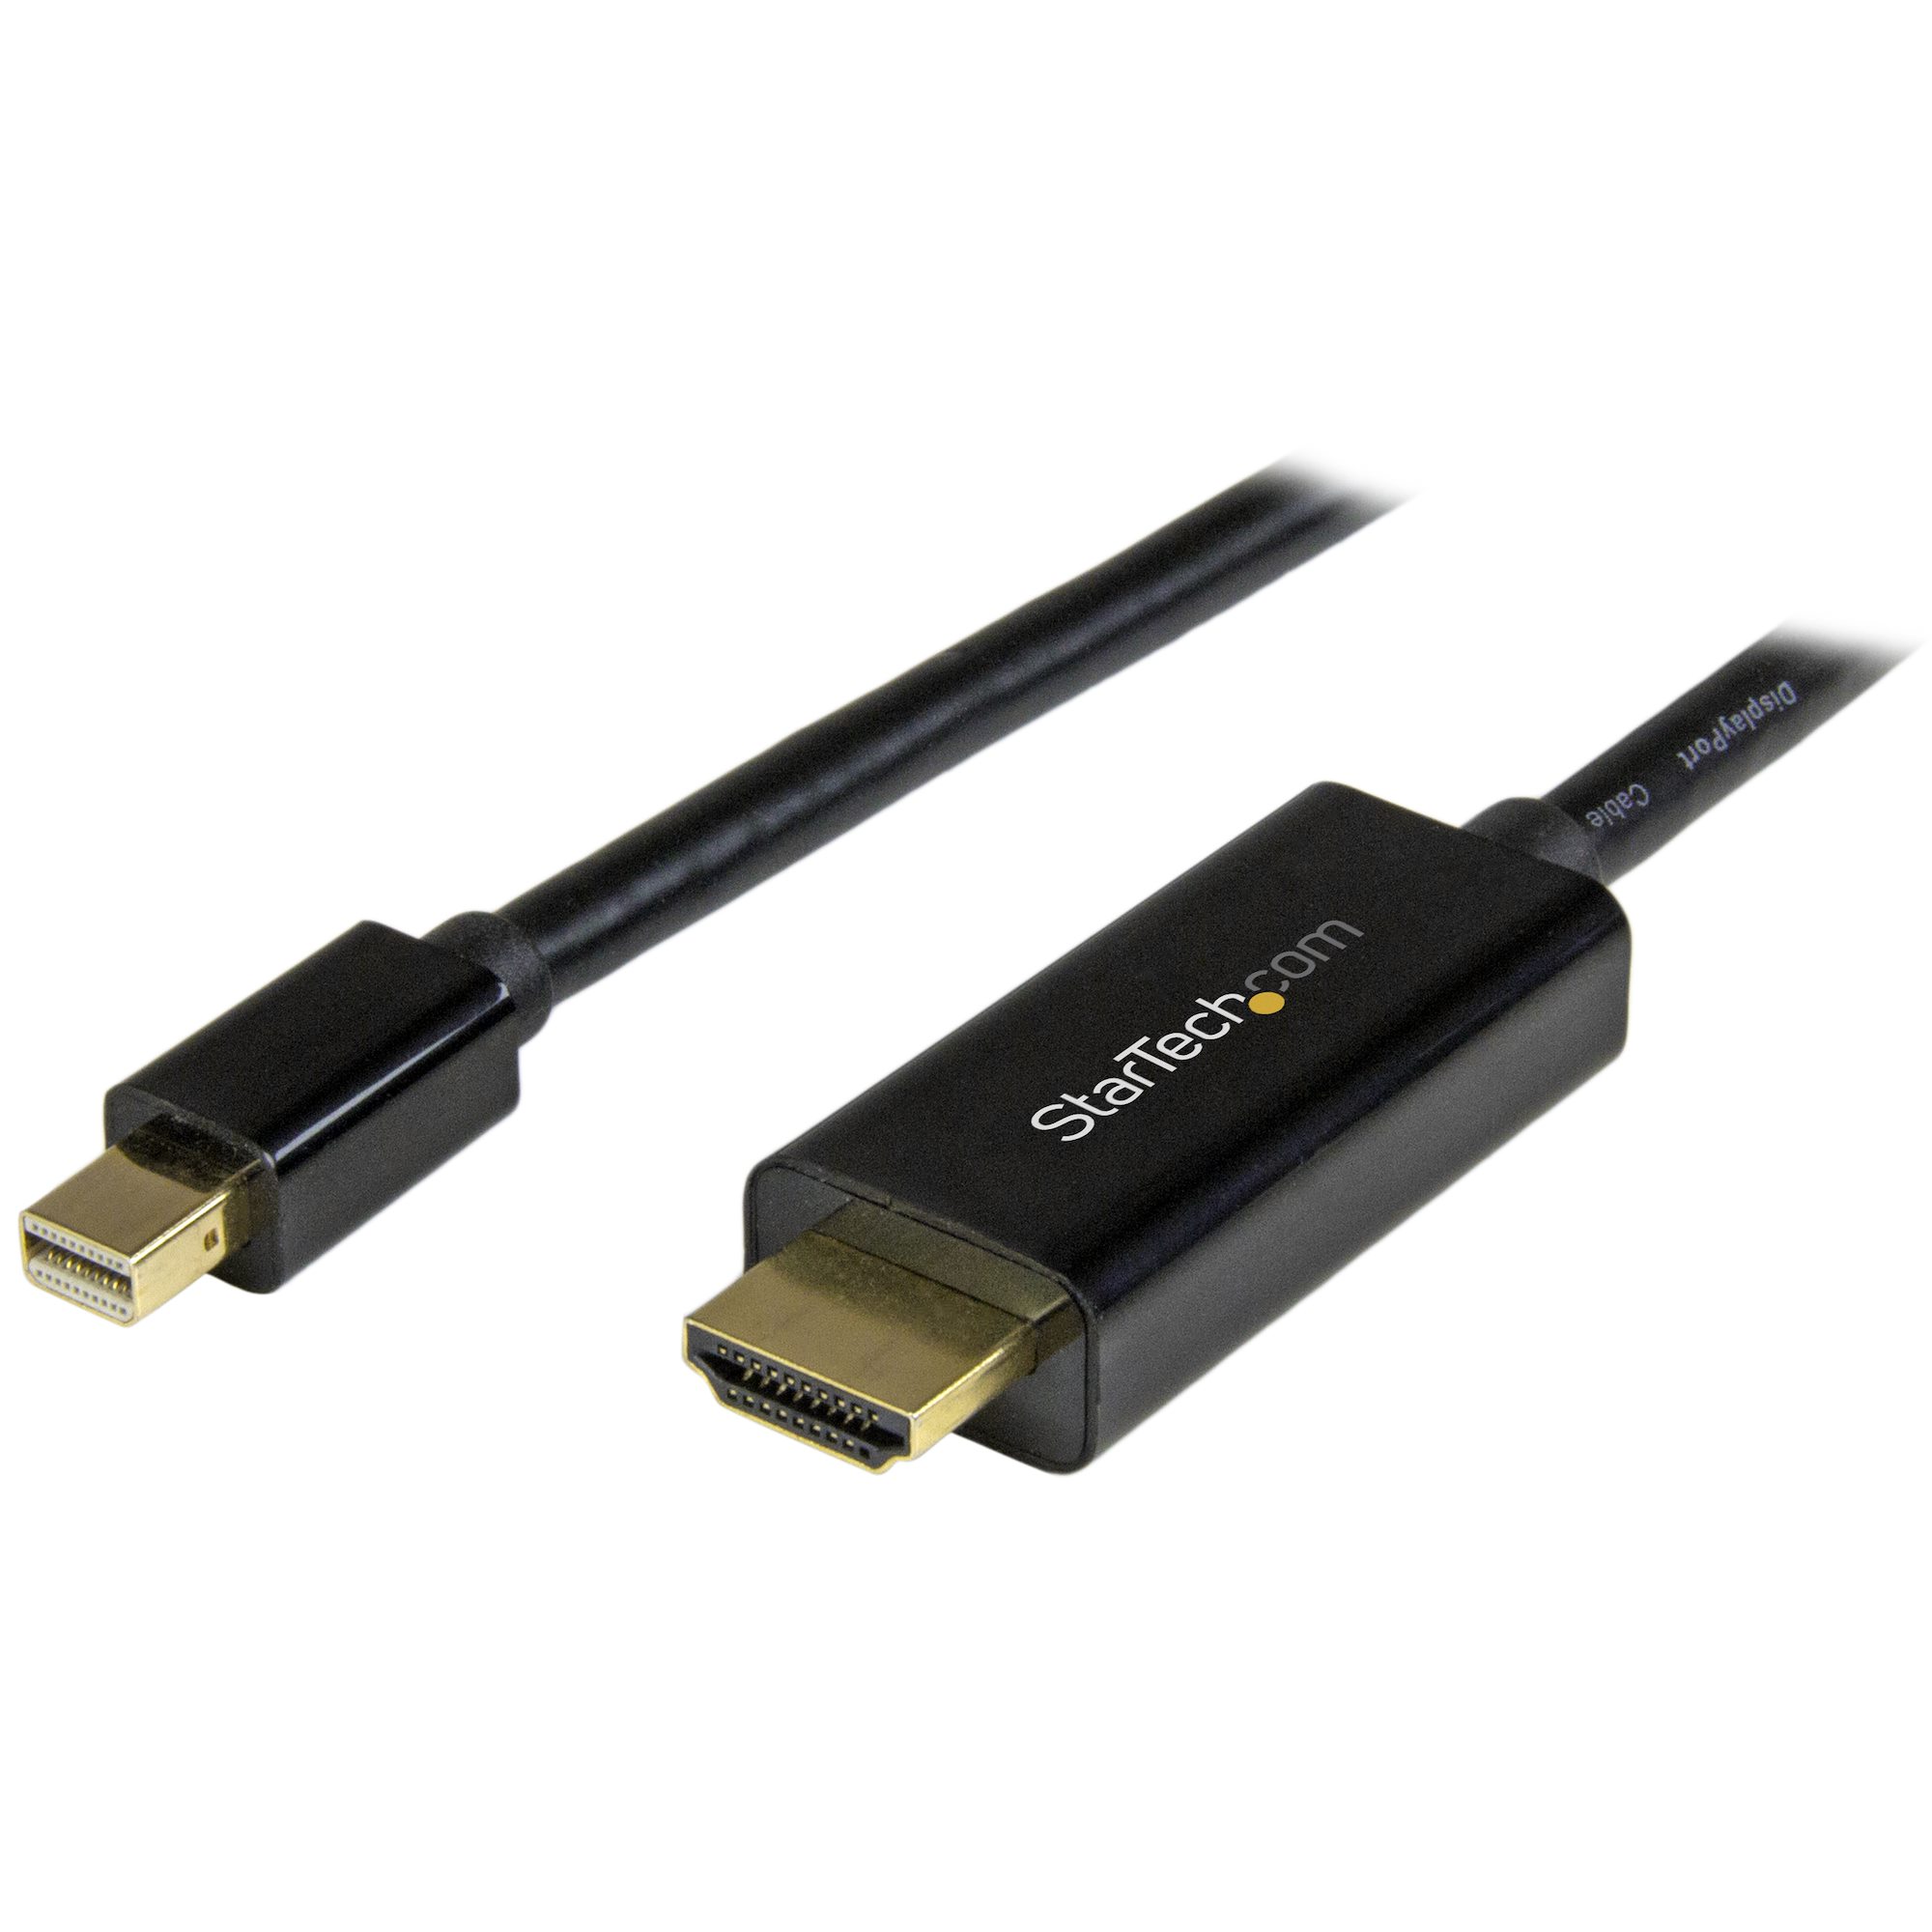 Mini Puerto de Pantalla a Cable HDMI 4K 1080P Thunderbolt Conversor HDMI para MacBook Pro iMac Mini DP a Adaptador de Cable HDMI 